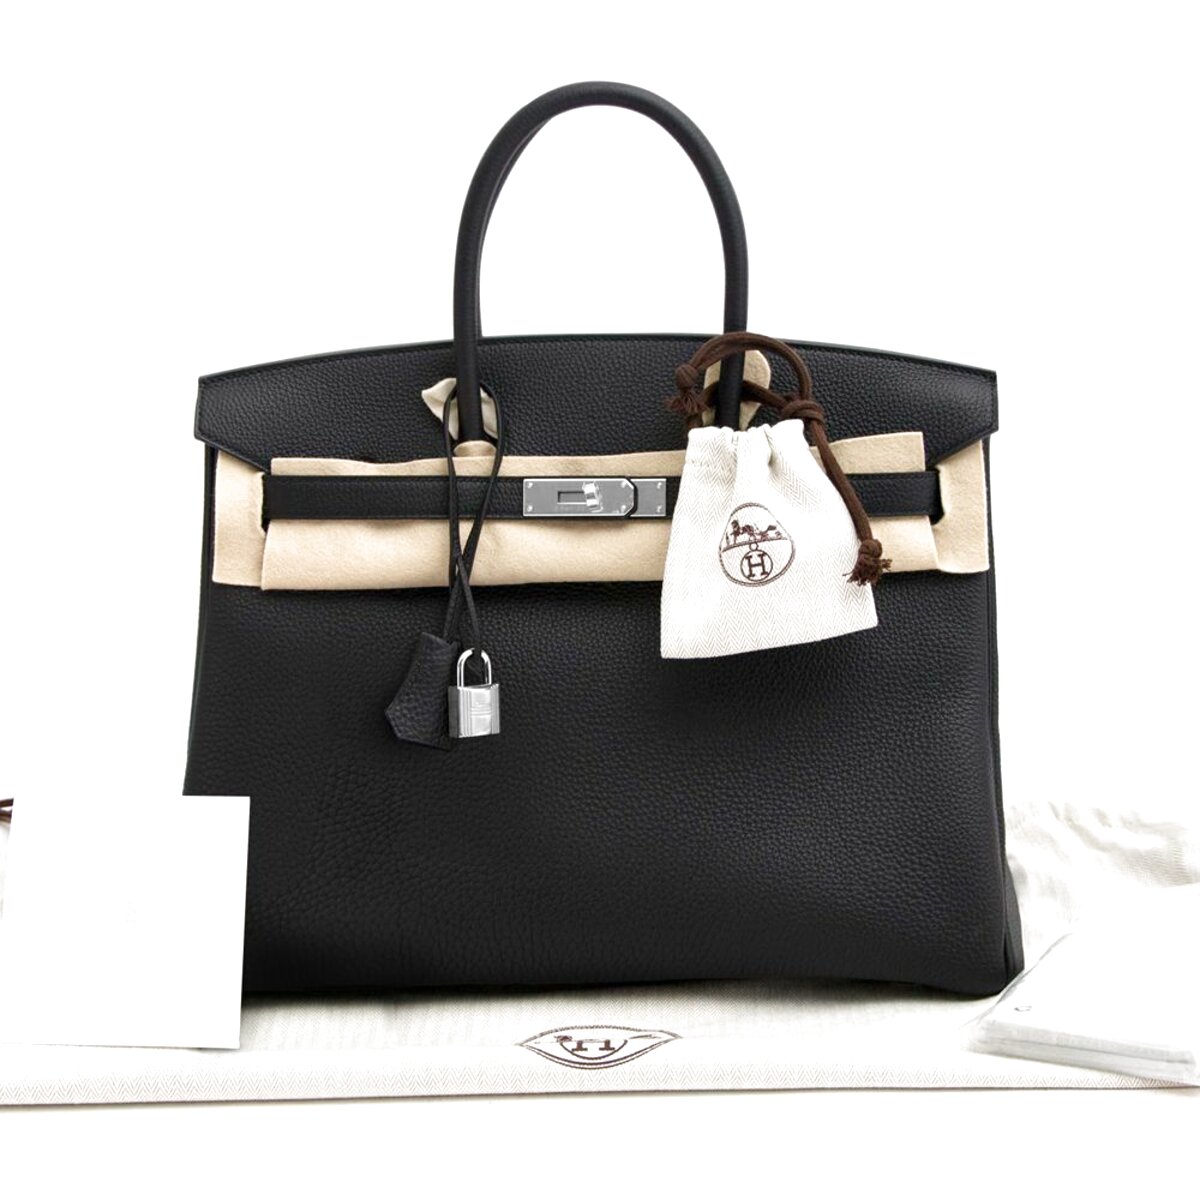 Hermes Handbags for sale in UK | 18 used Hermes Handbags